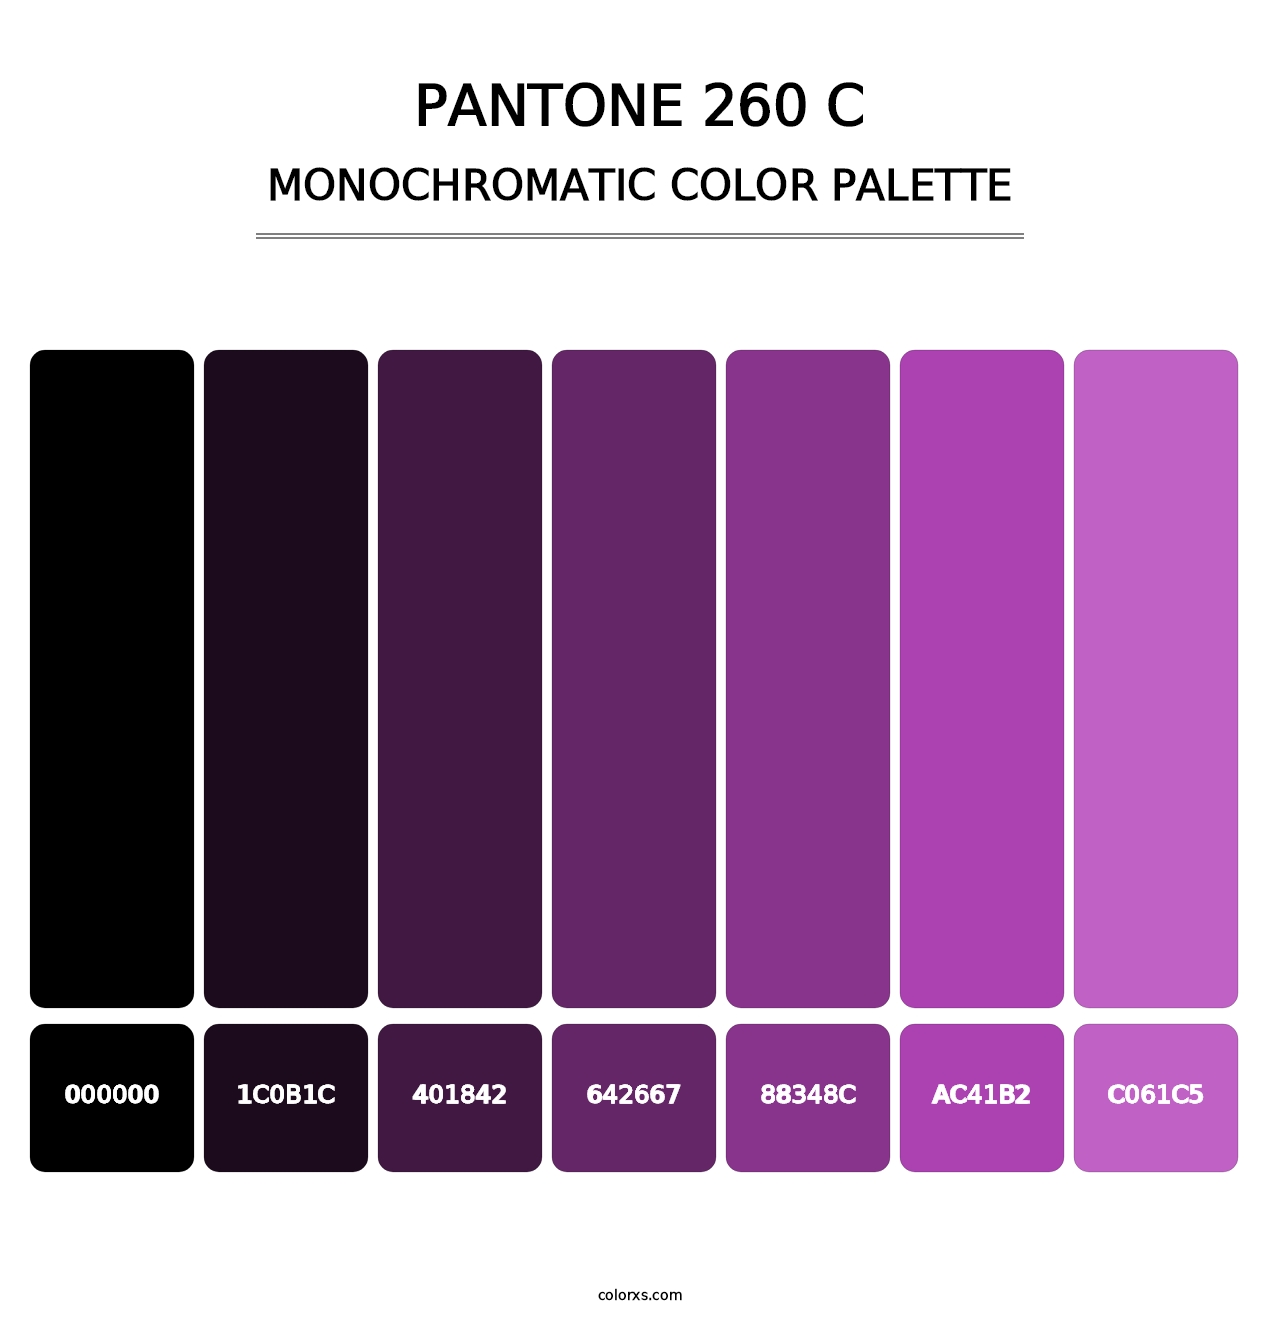 PANTONE 260 C - Monochromatic Color Palette